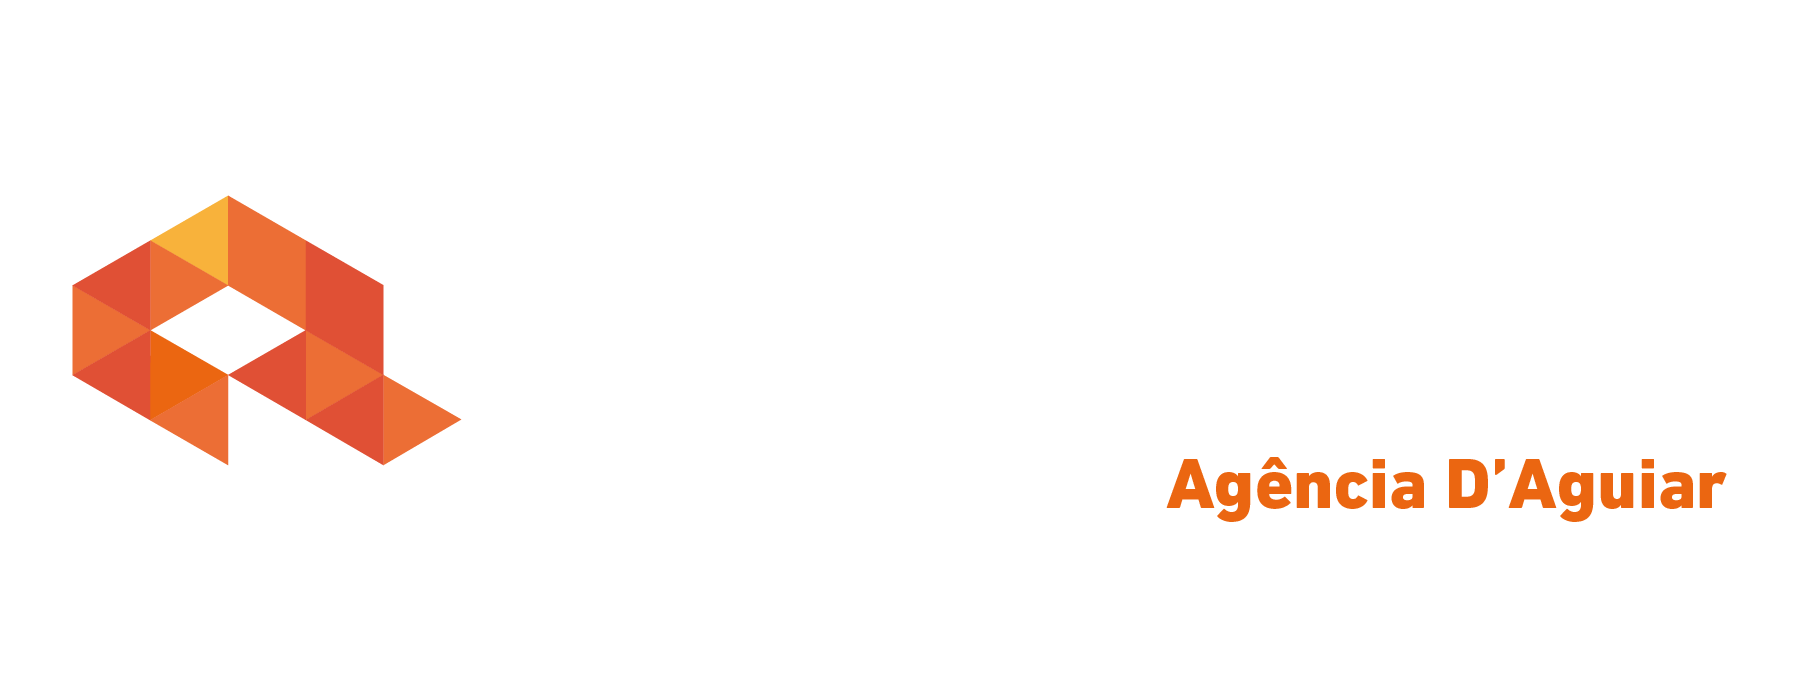 Logo crédito real Crédito Real D’Aguiar